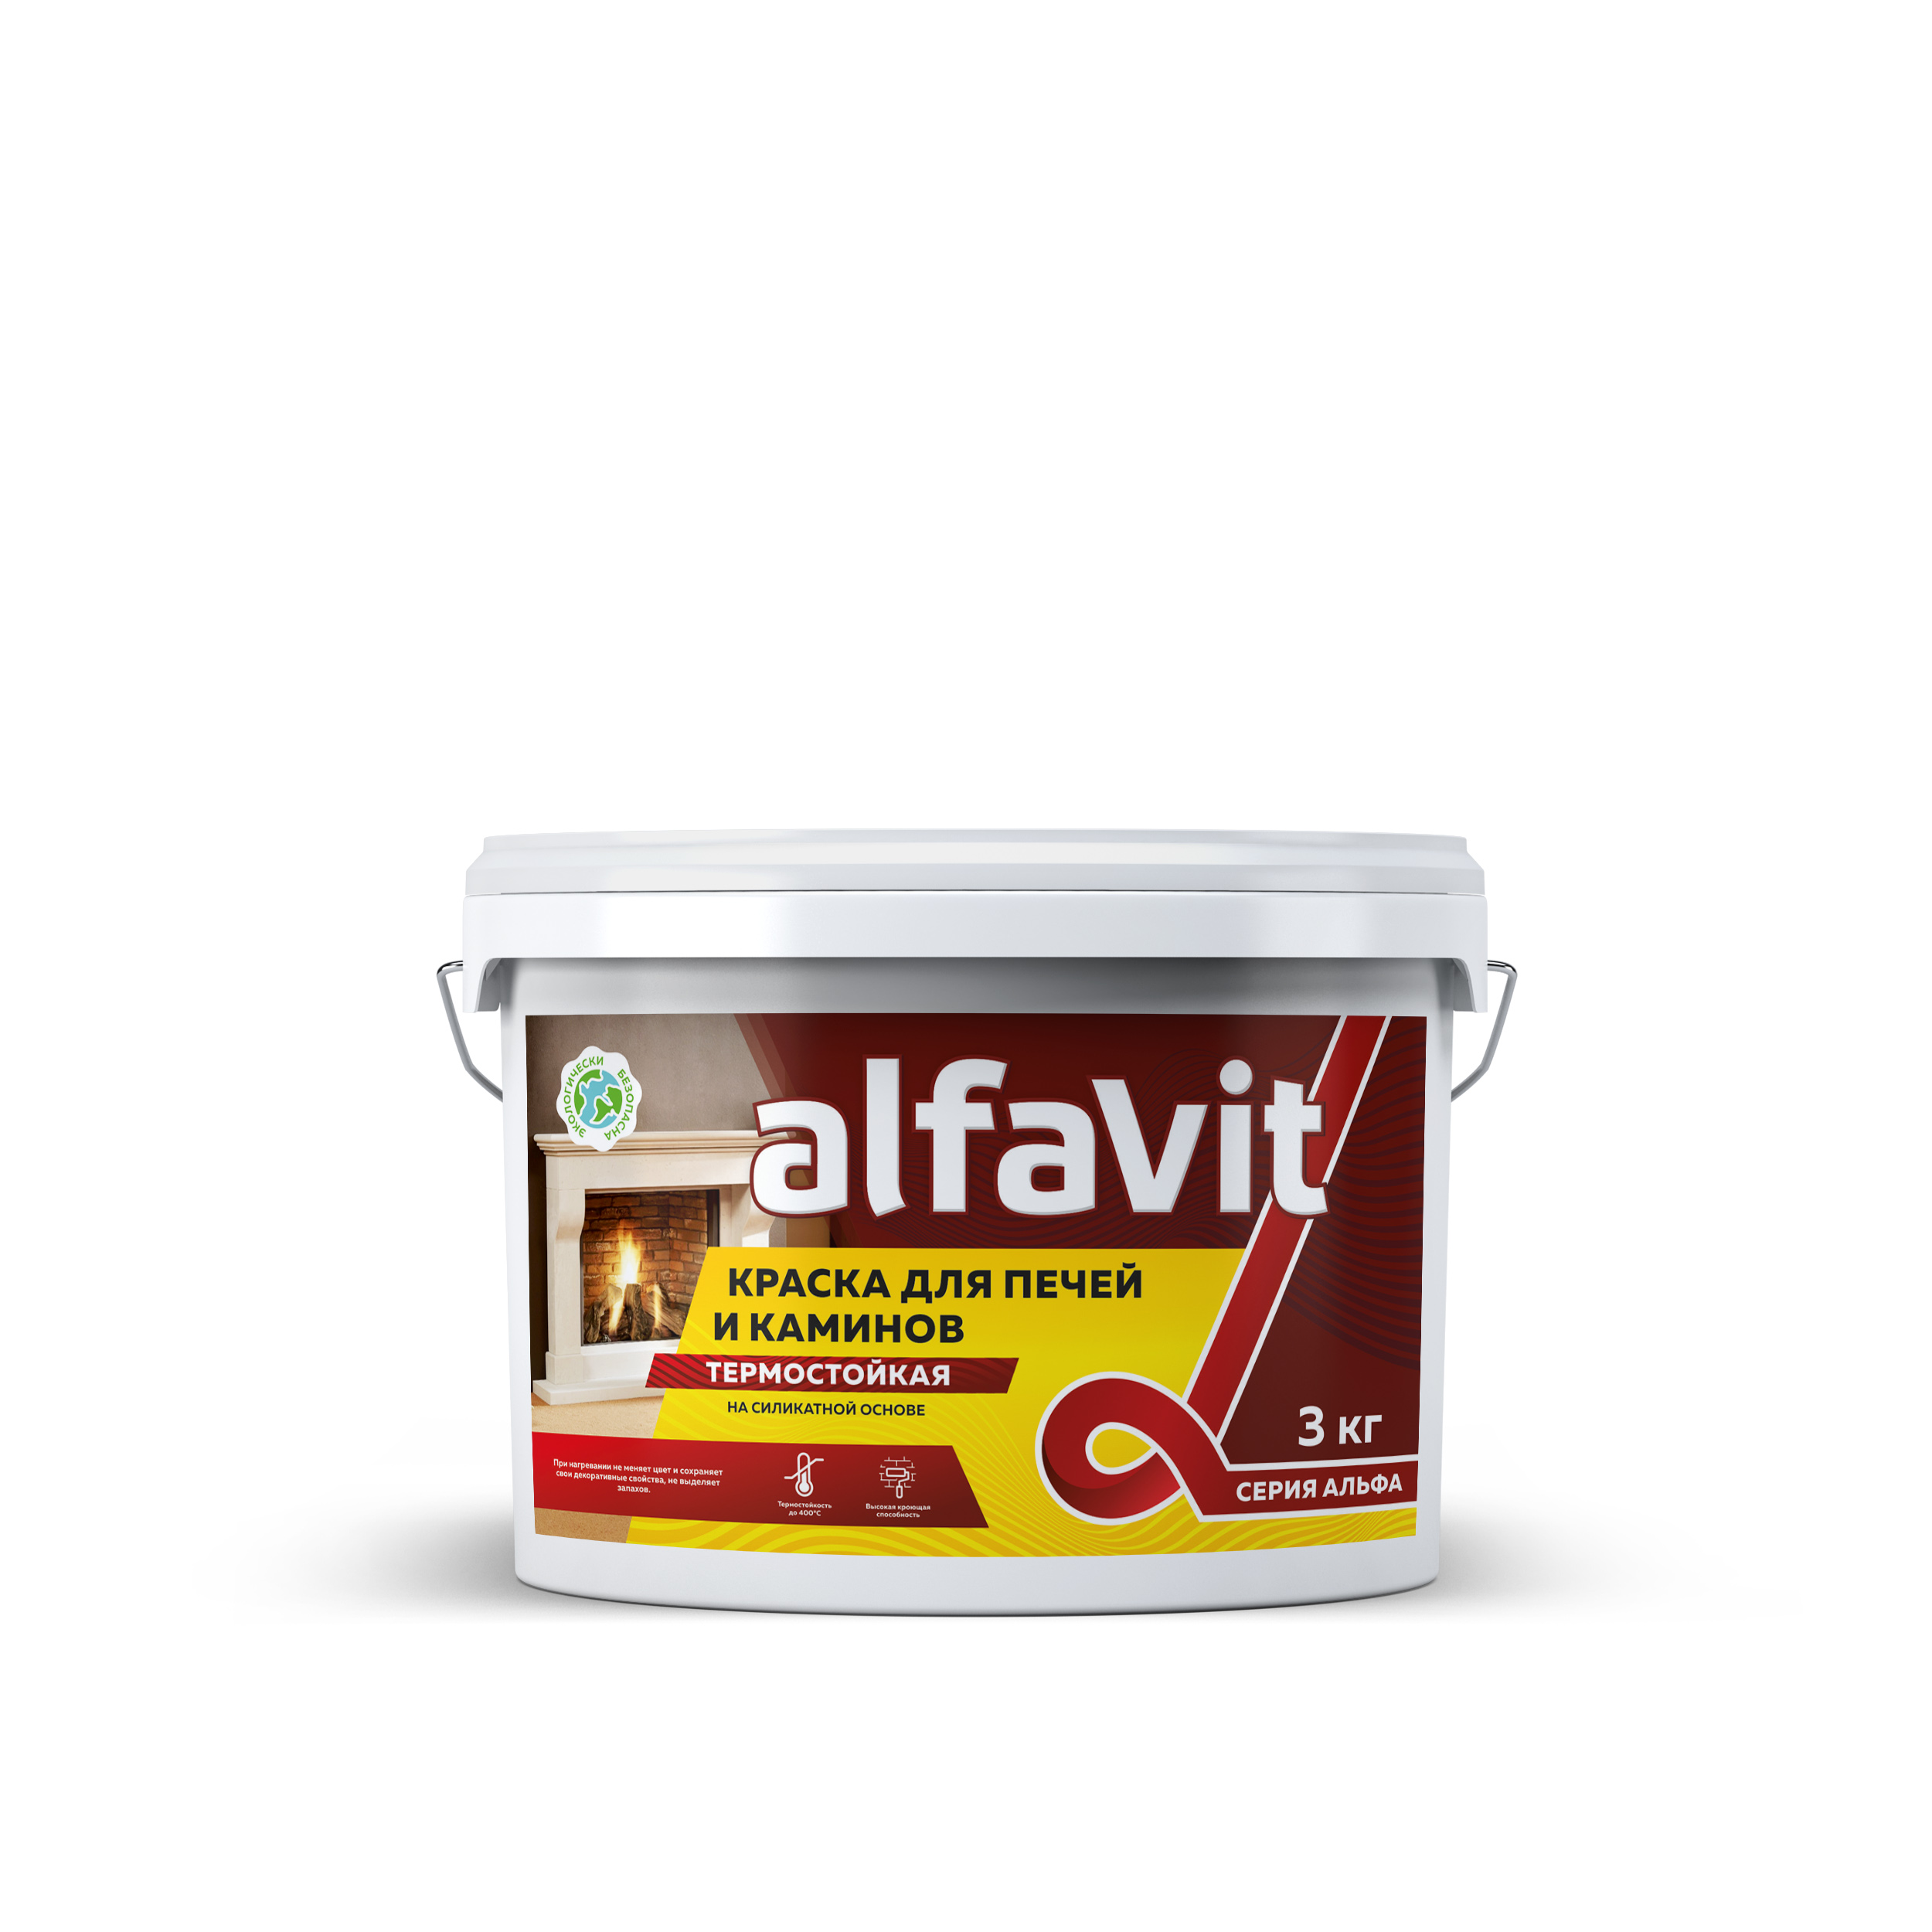 Краска для печей и каминов Alfavit серия Альфа, термостойкая, белая, 3 кг краска для мангалов и печей черная цельсит 900 0 9 кг